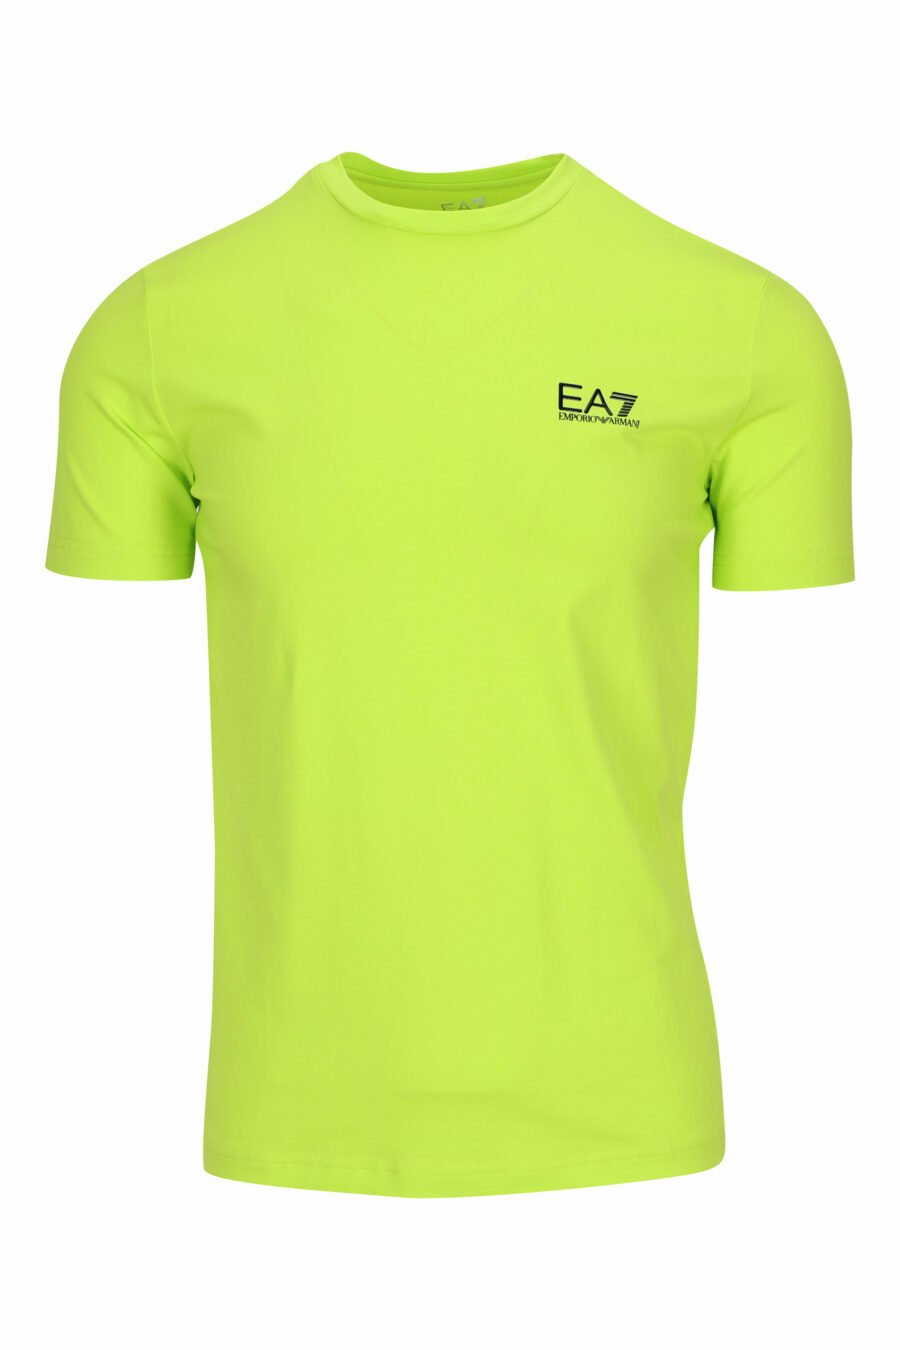 T-shirt vert citron avec minilogo "lux identity" en caoutchouc - 8058947458301